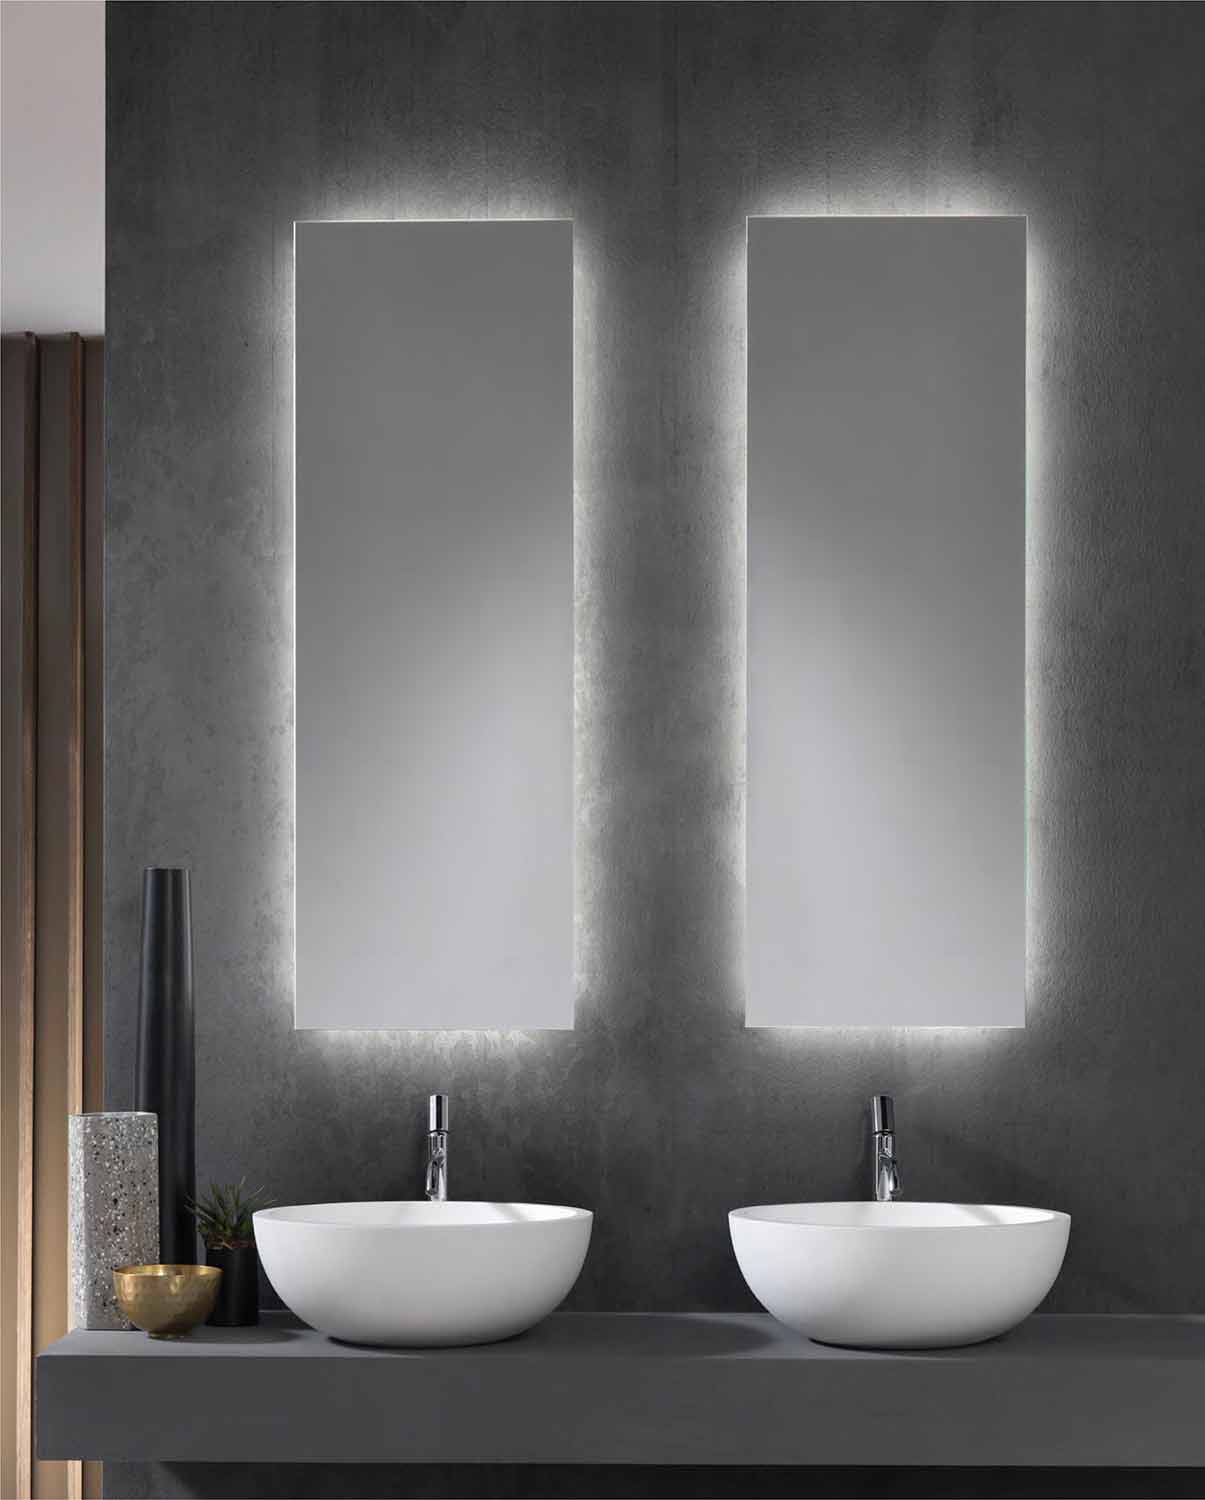 Specchio ID Noemi21 specchio da bagno a LED con illuminazione design tutto intorno a seconda delle dimensioni – a scelta: larghezza 80 x altezza 60 cm – bianco neutro prodotto in Germania